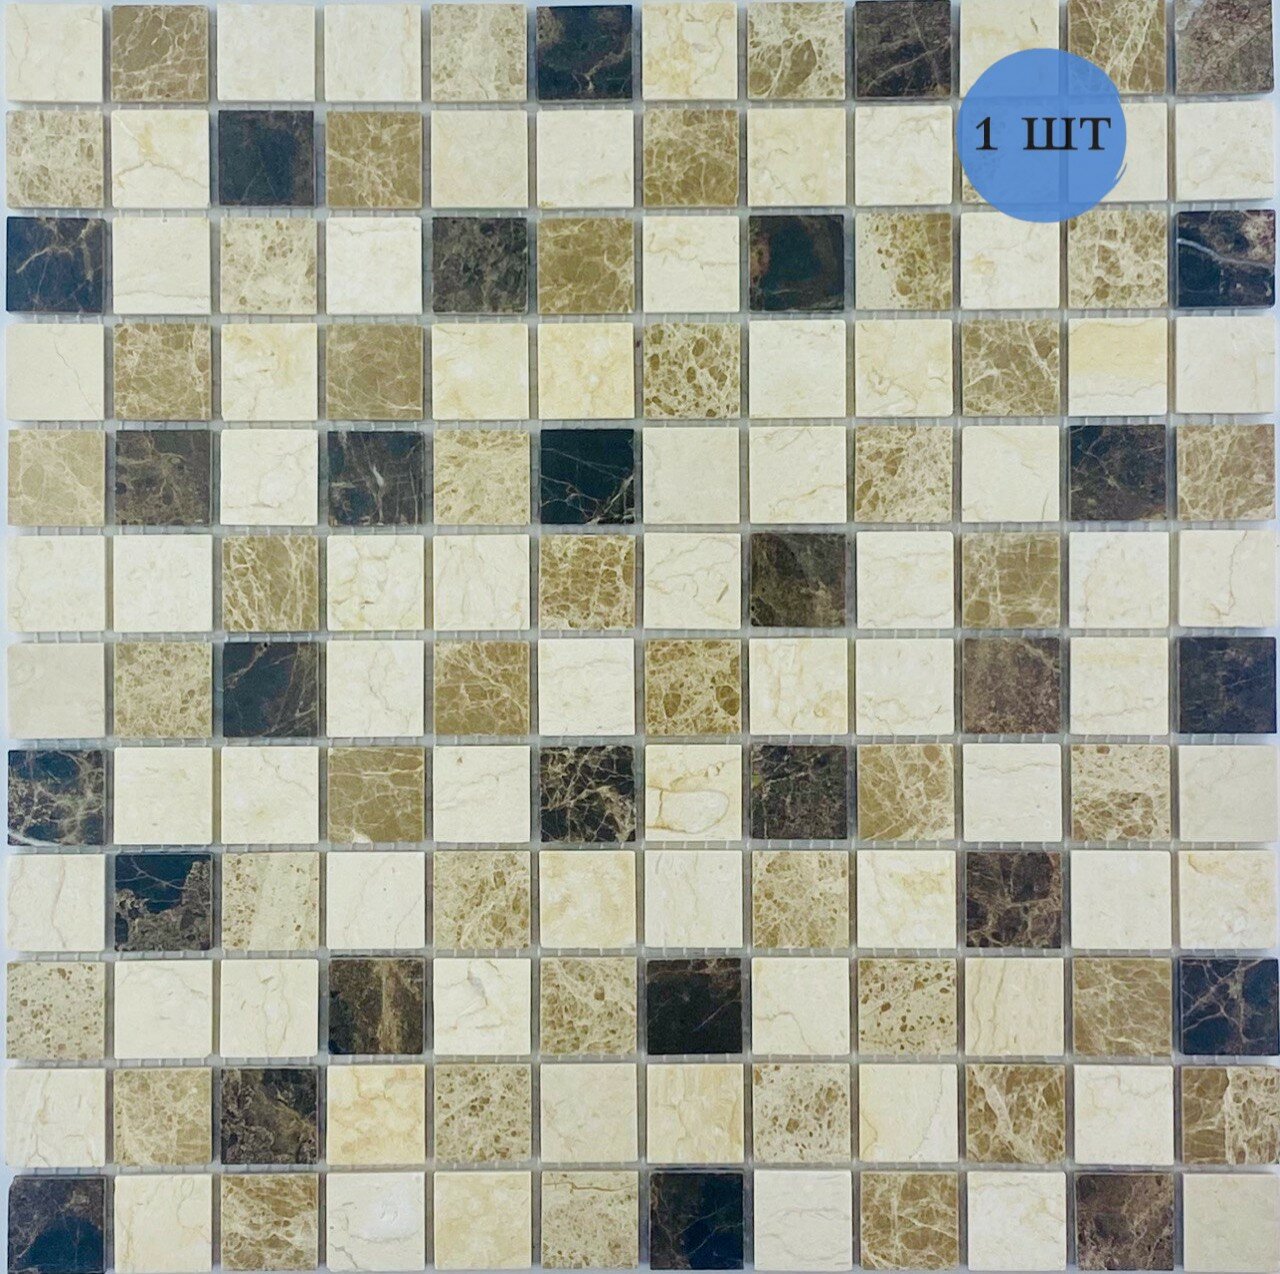 Мозаика (мрамор) NS mosaic Kp-739 30x30 см 1 шт (0,09 м²)